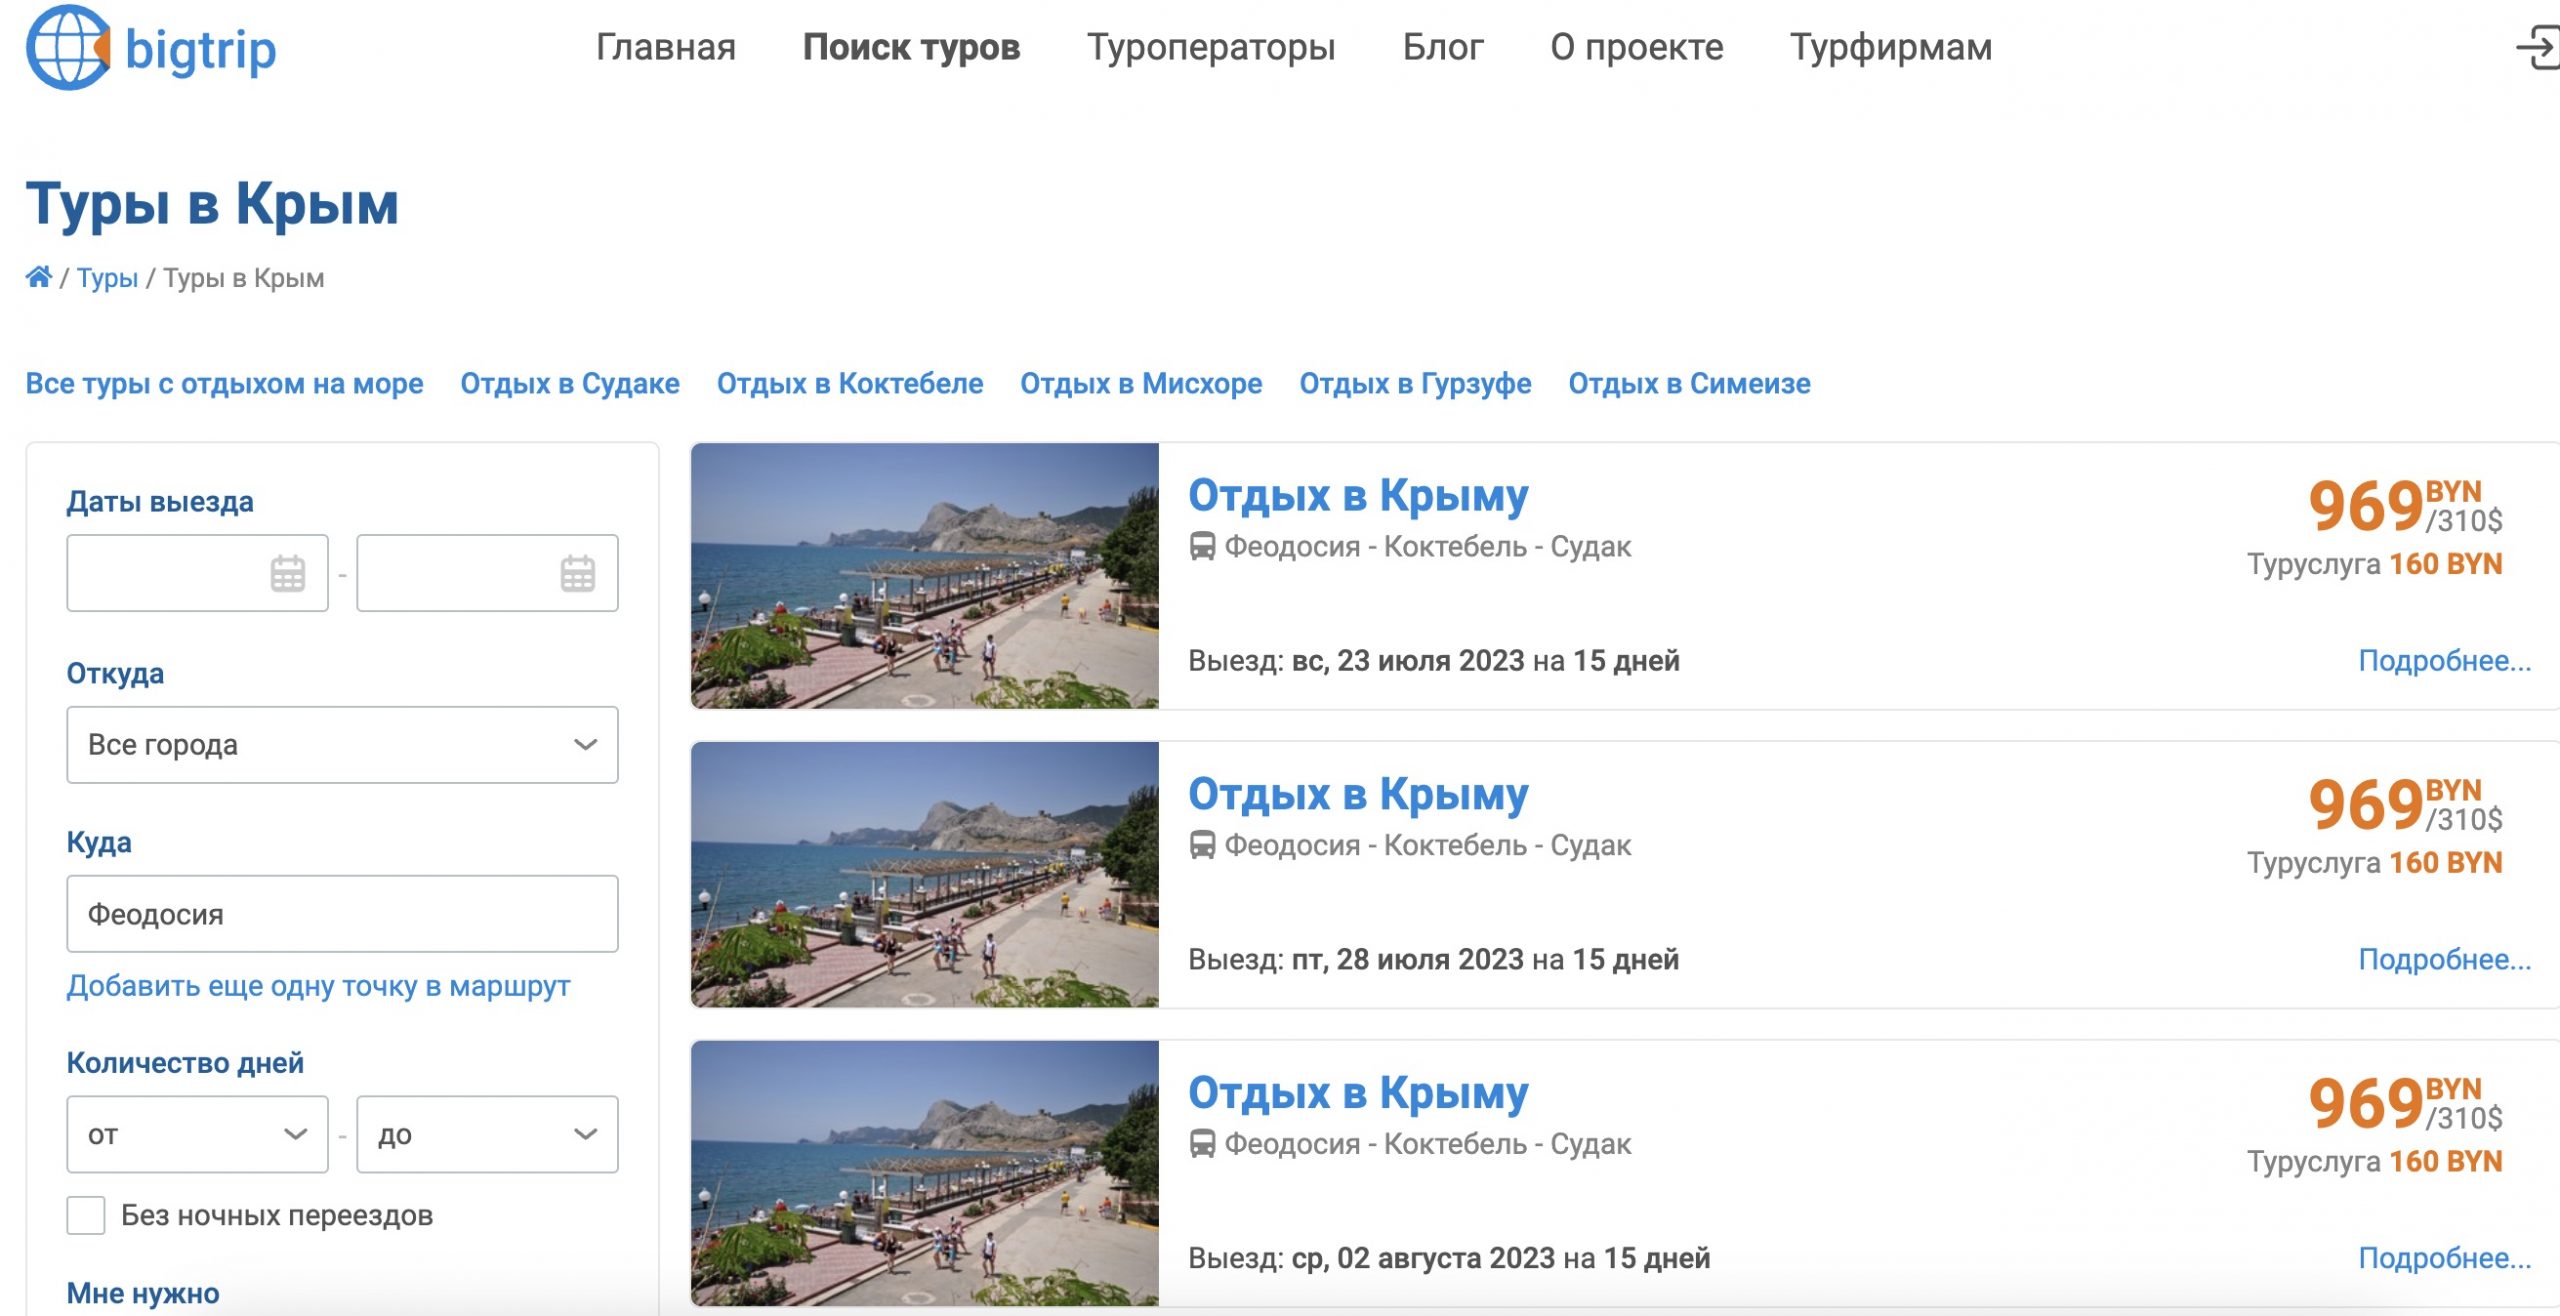 Информация с турами в Крым. Скриншот с сайта турфирмы.